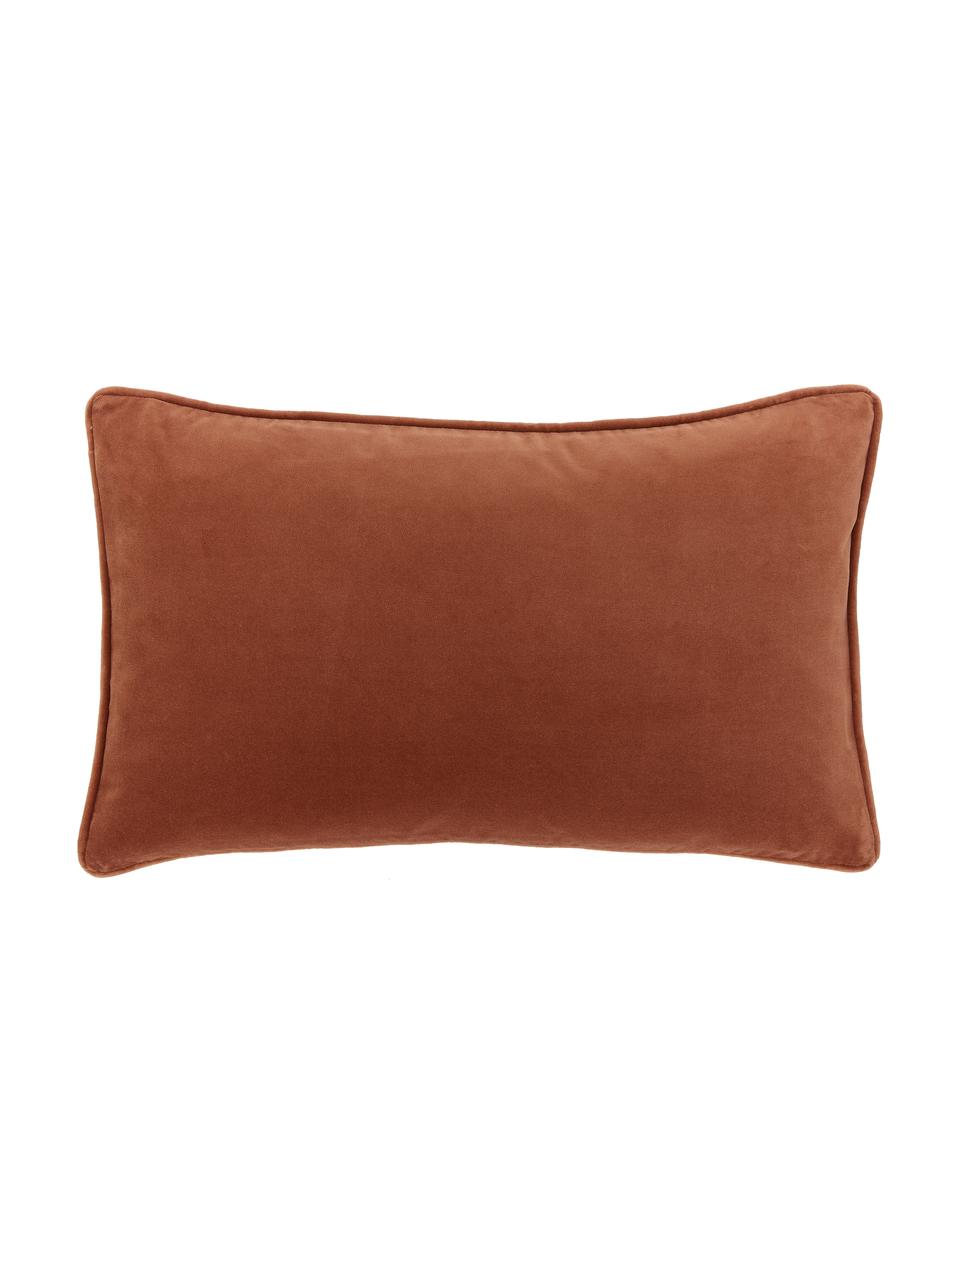 Poszewka na poduszkę z aksamitu Dana, 100% aksamit bawełniany, Rdzawoczerwony, S 30 x D 50 cm